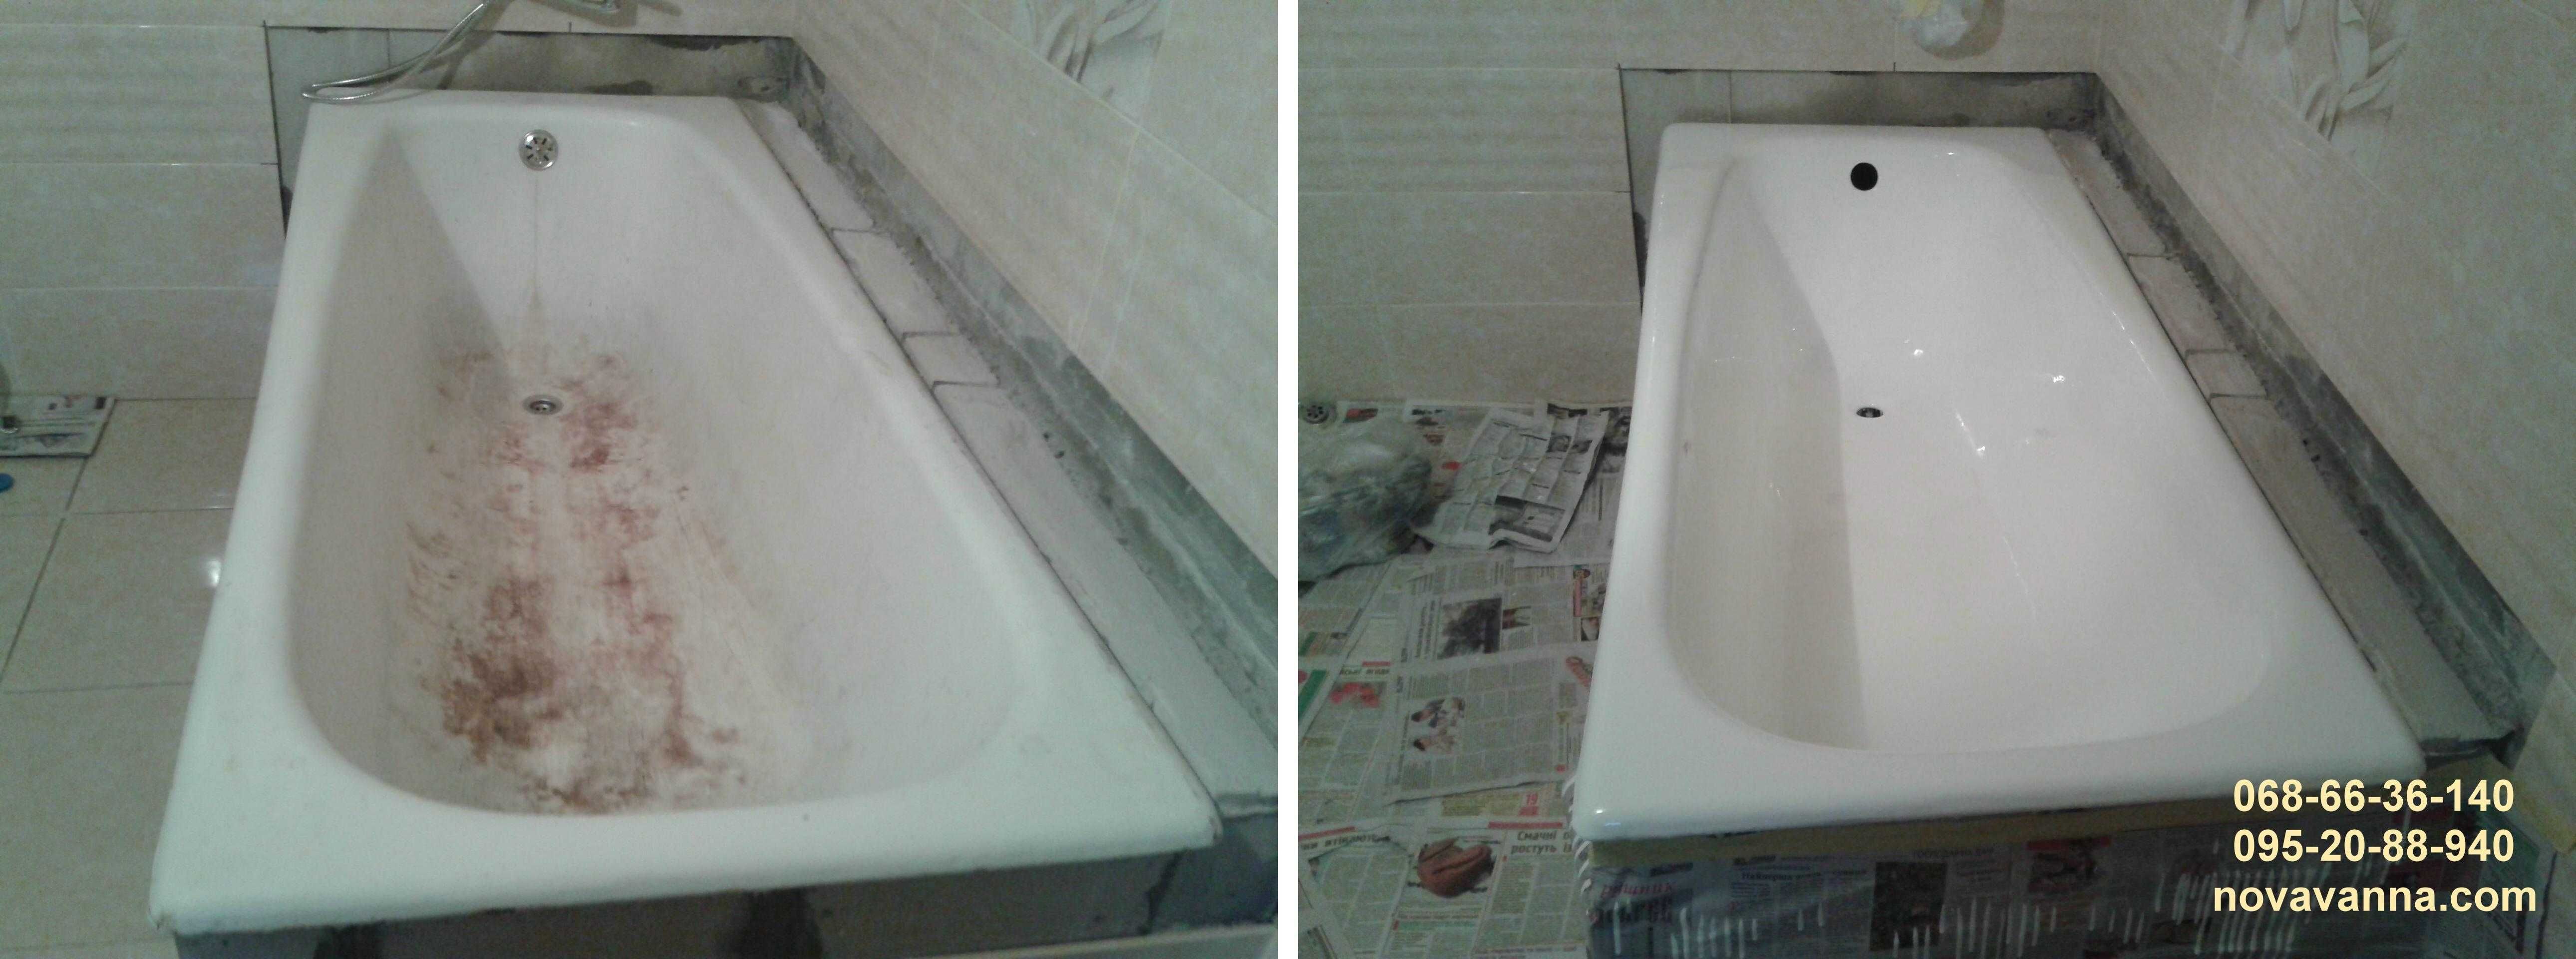 Реставрация ванн СУМЫ. Восстановление ванн Сумы и область. Гарантия